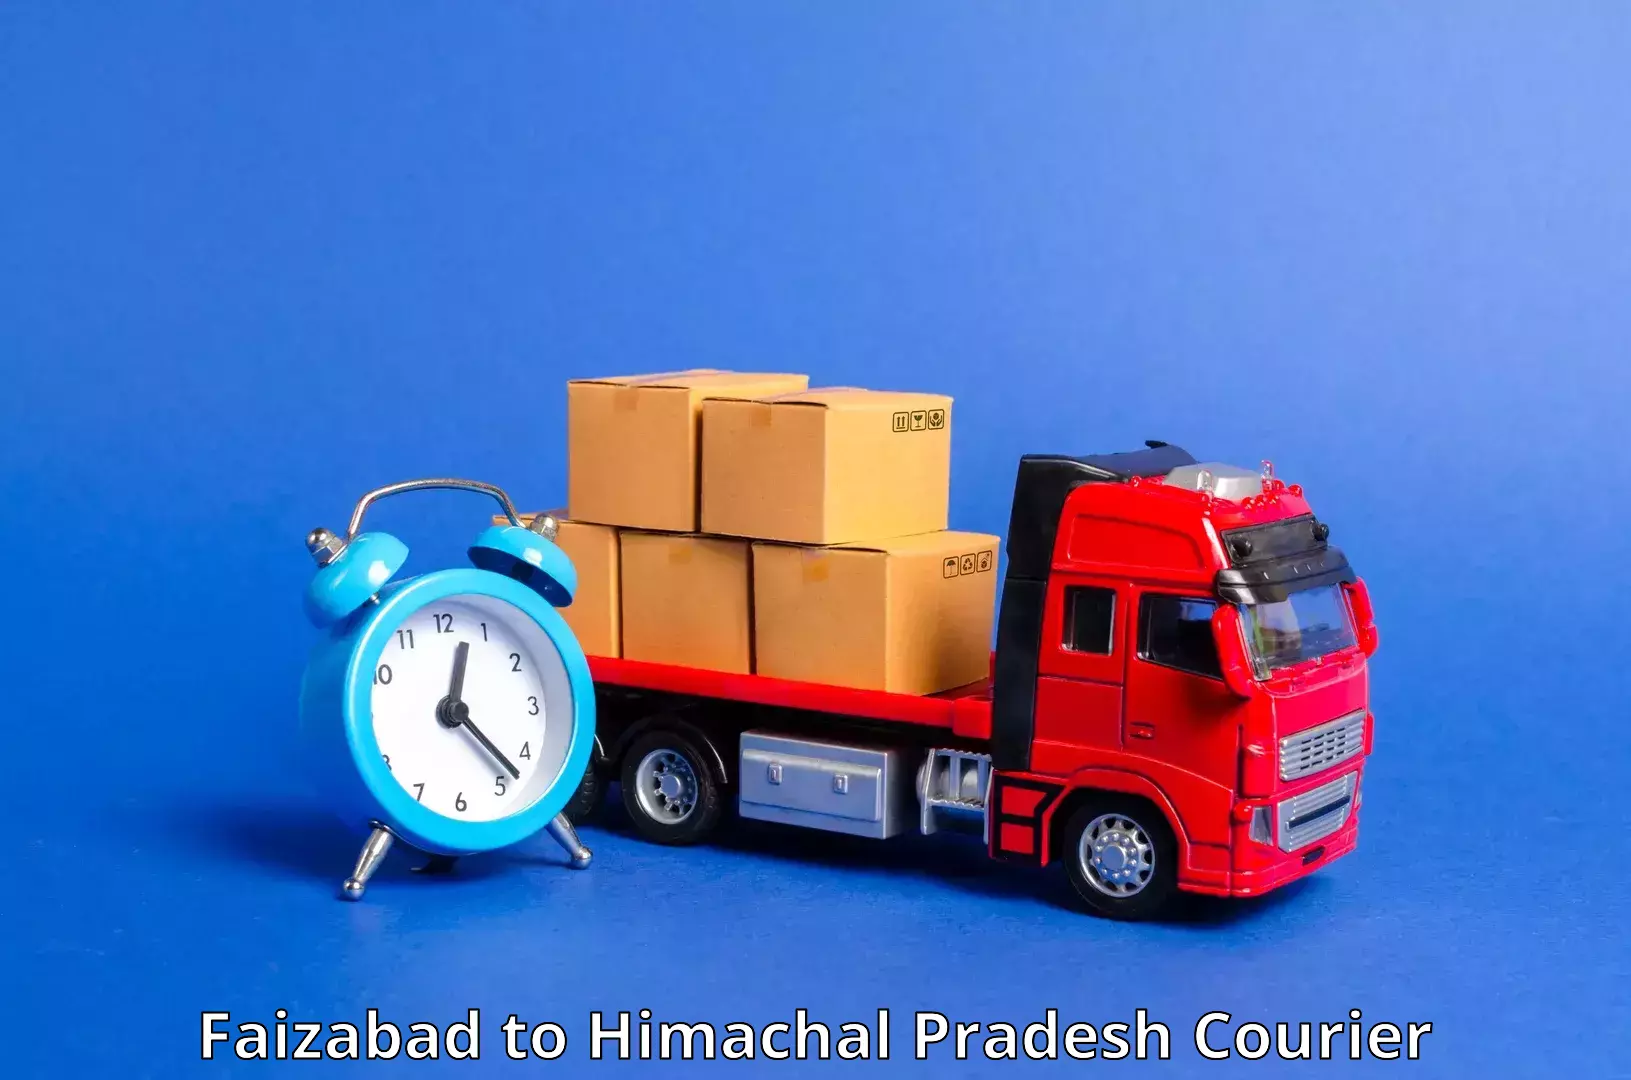 24-hour courier service Faizabad to Himachal Pradesh